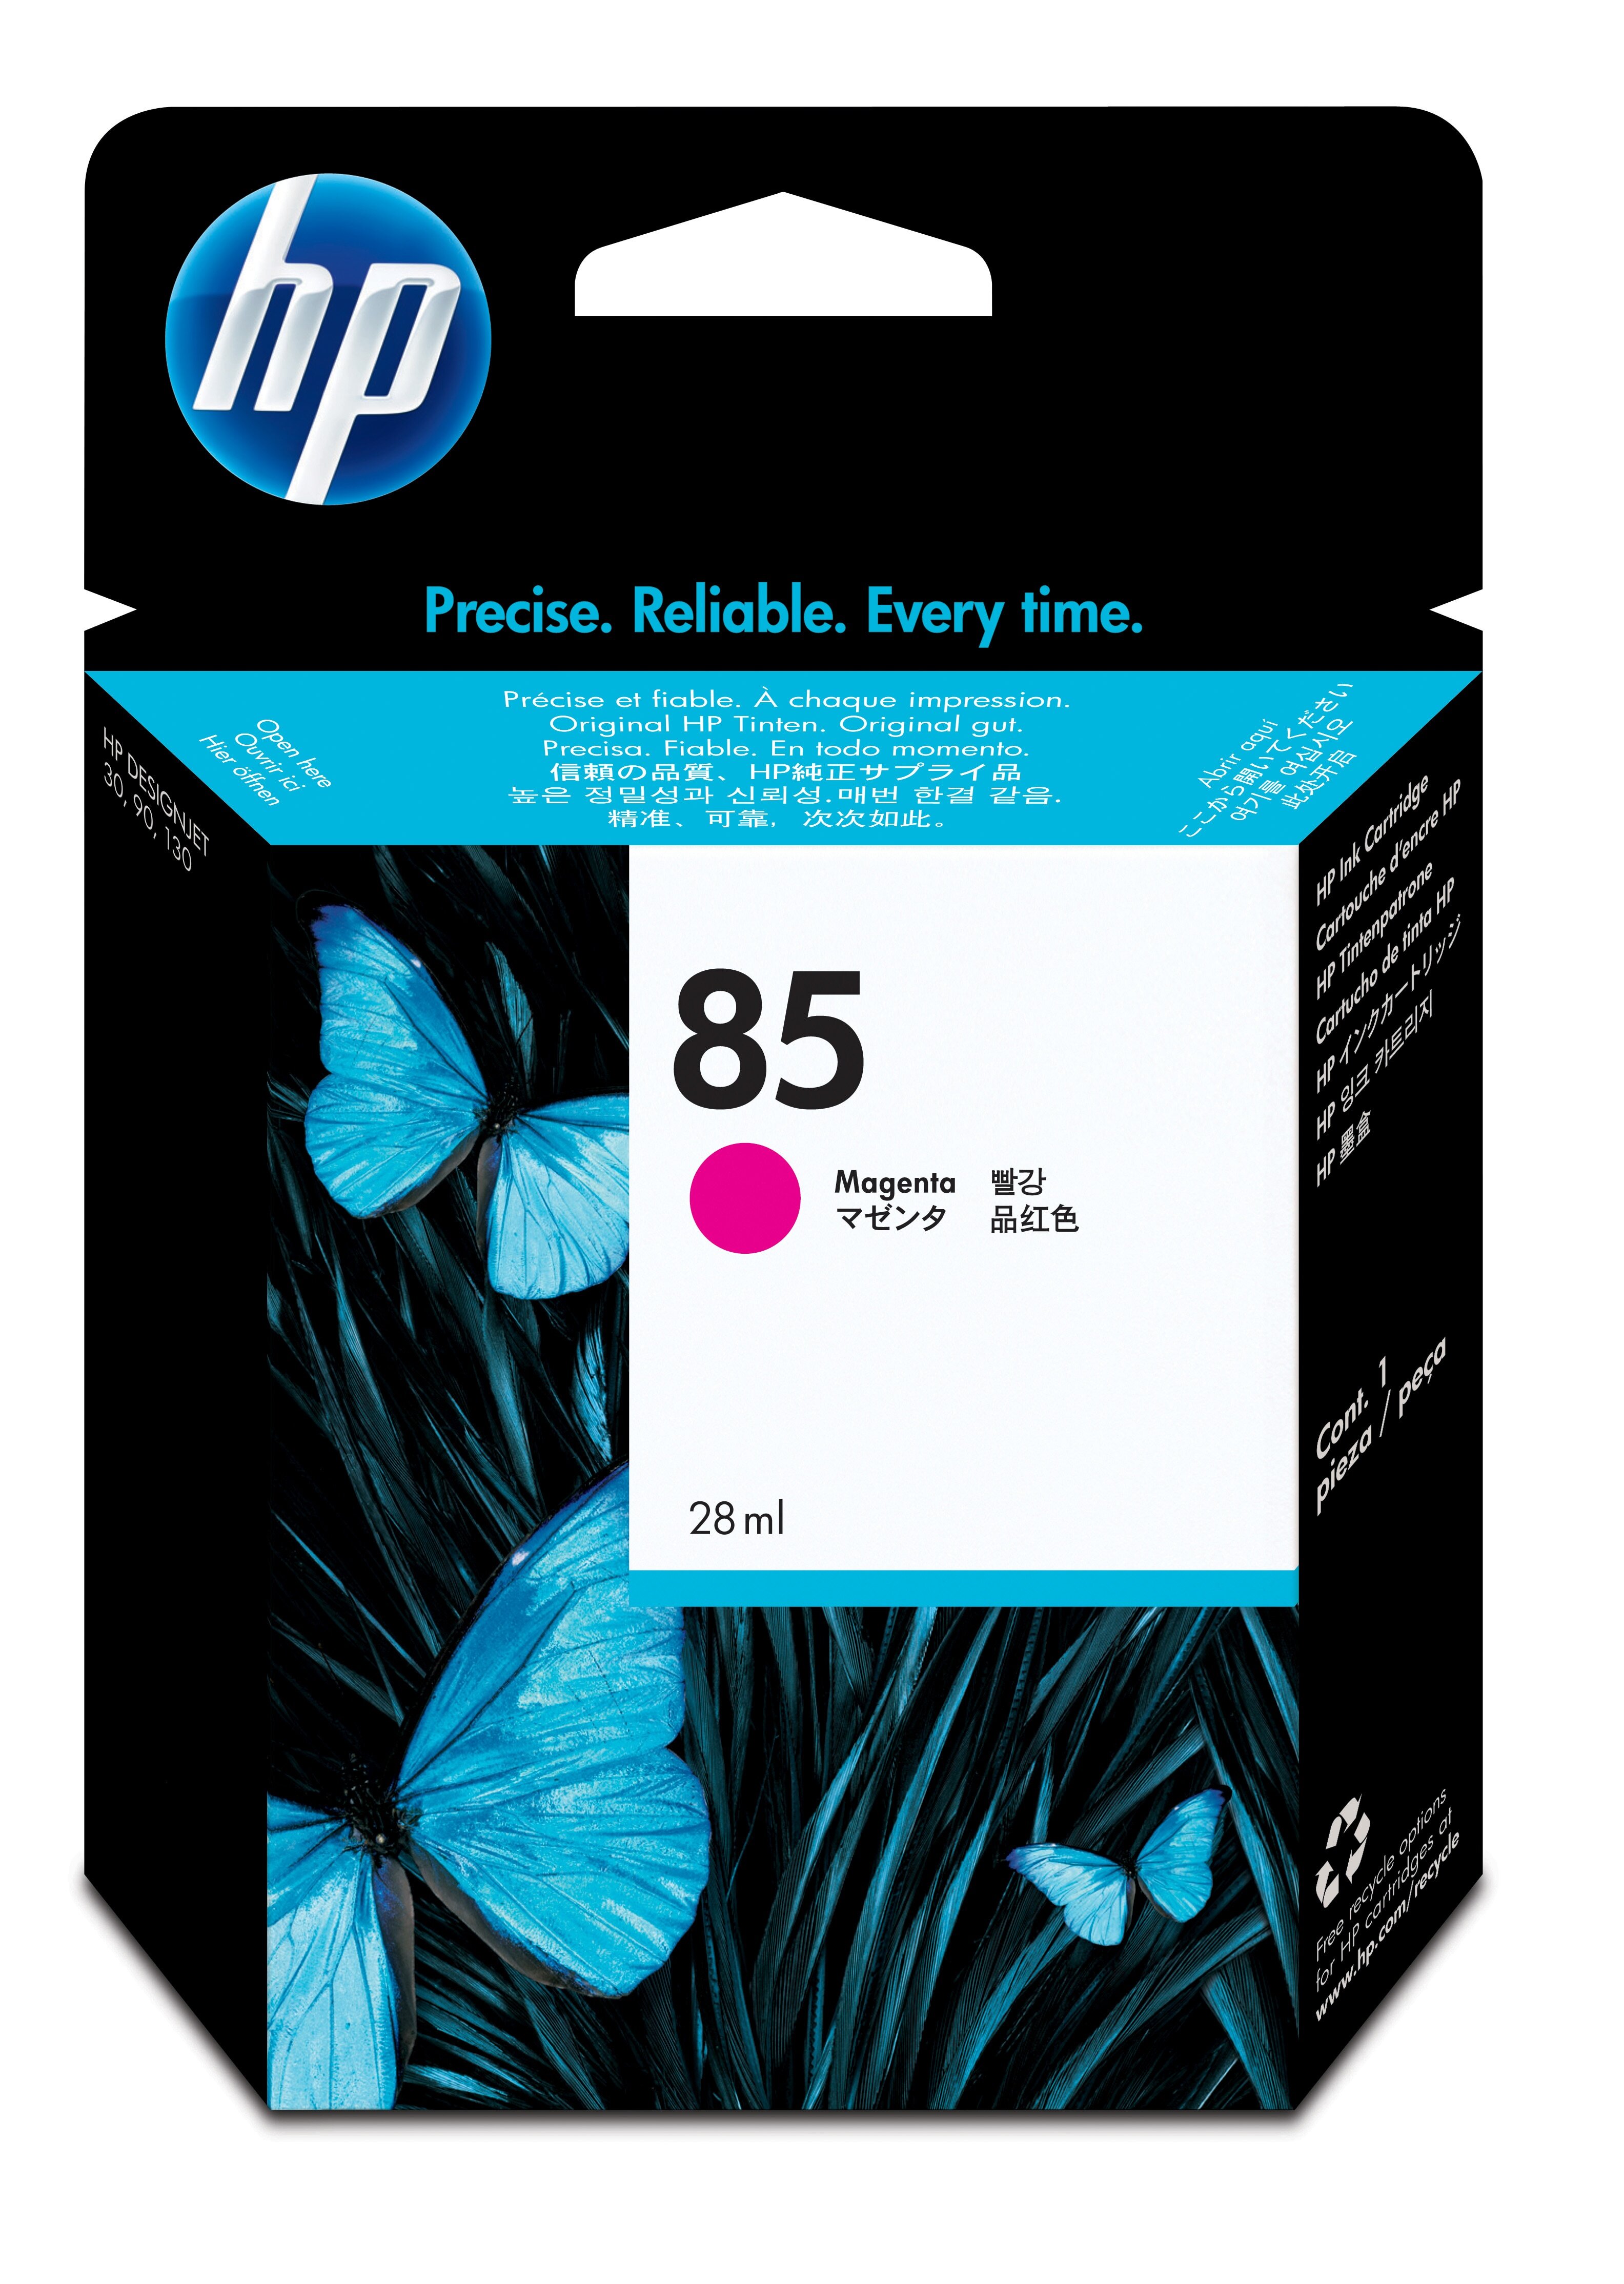 HP 85 magenta DesignJet inktcartridge, 28 ml single pack / magenta